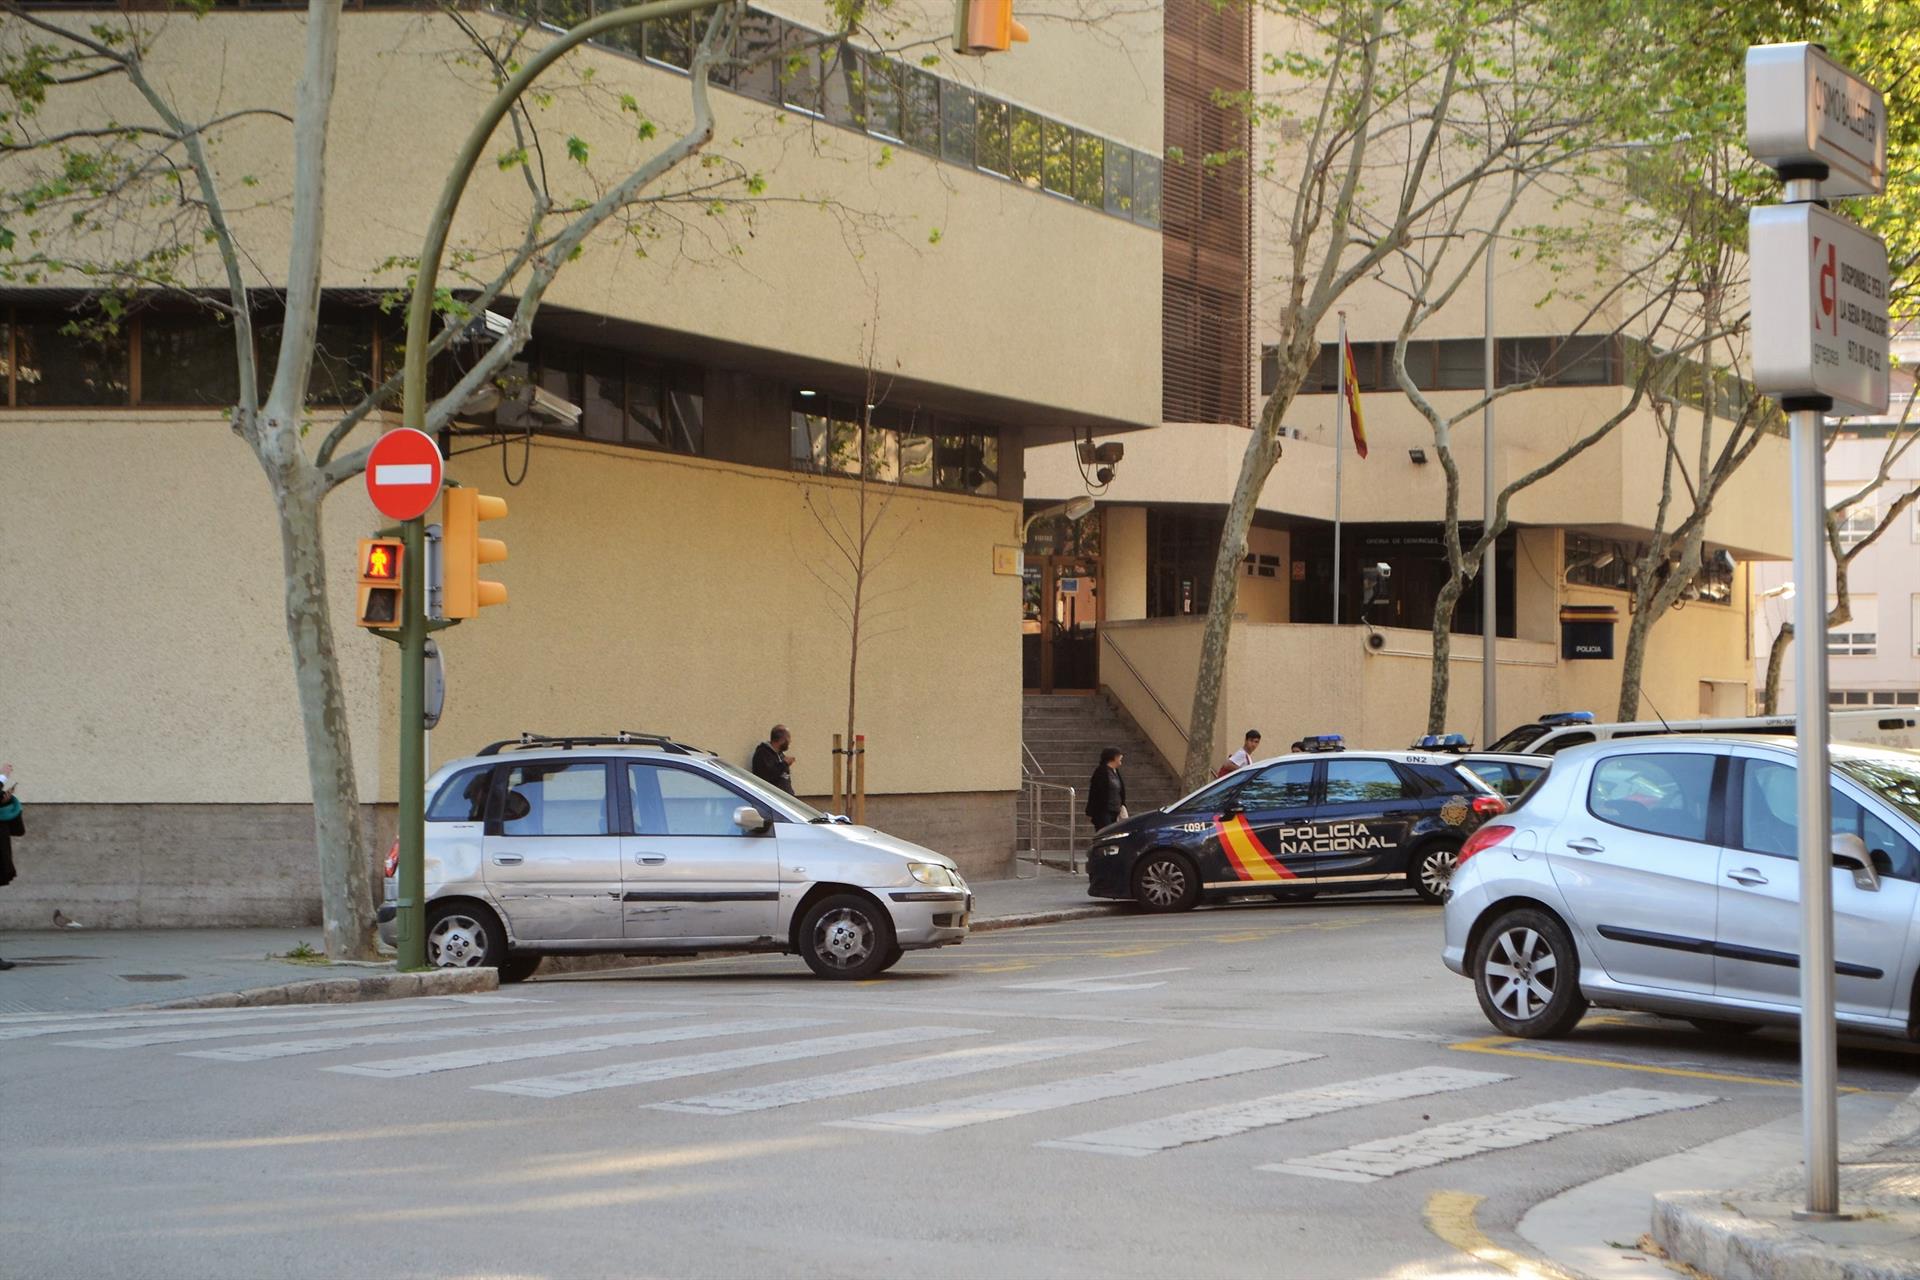 Jefatura de la Policía Nacional en Palma, en la calle Simó Ballester. - EUROPA PRESS - Archivo